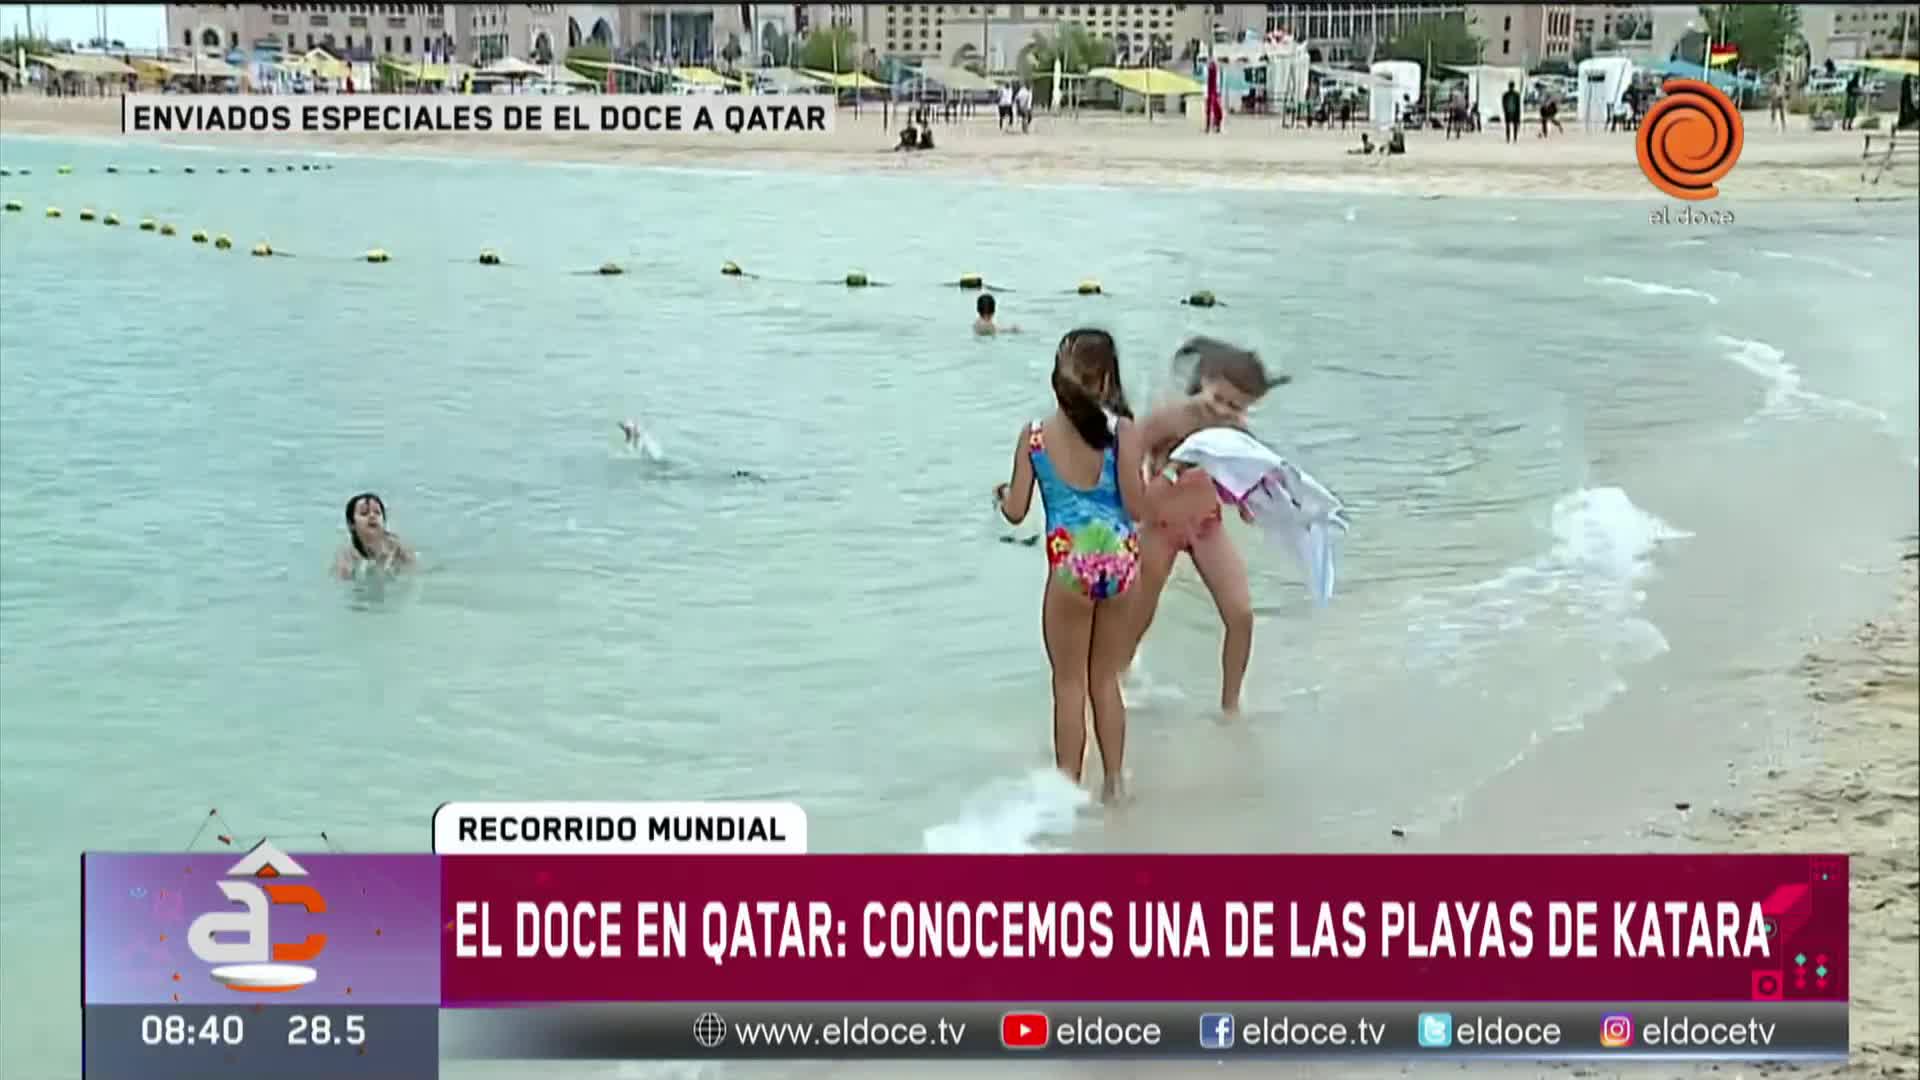 Jorge Cuadrado disfrutó del día en la playa Katara en Doha